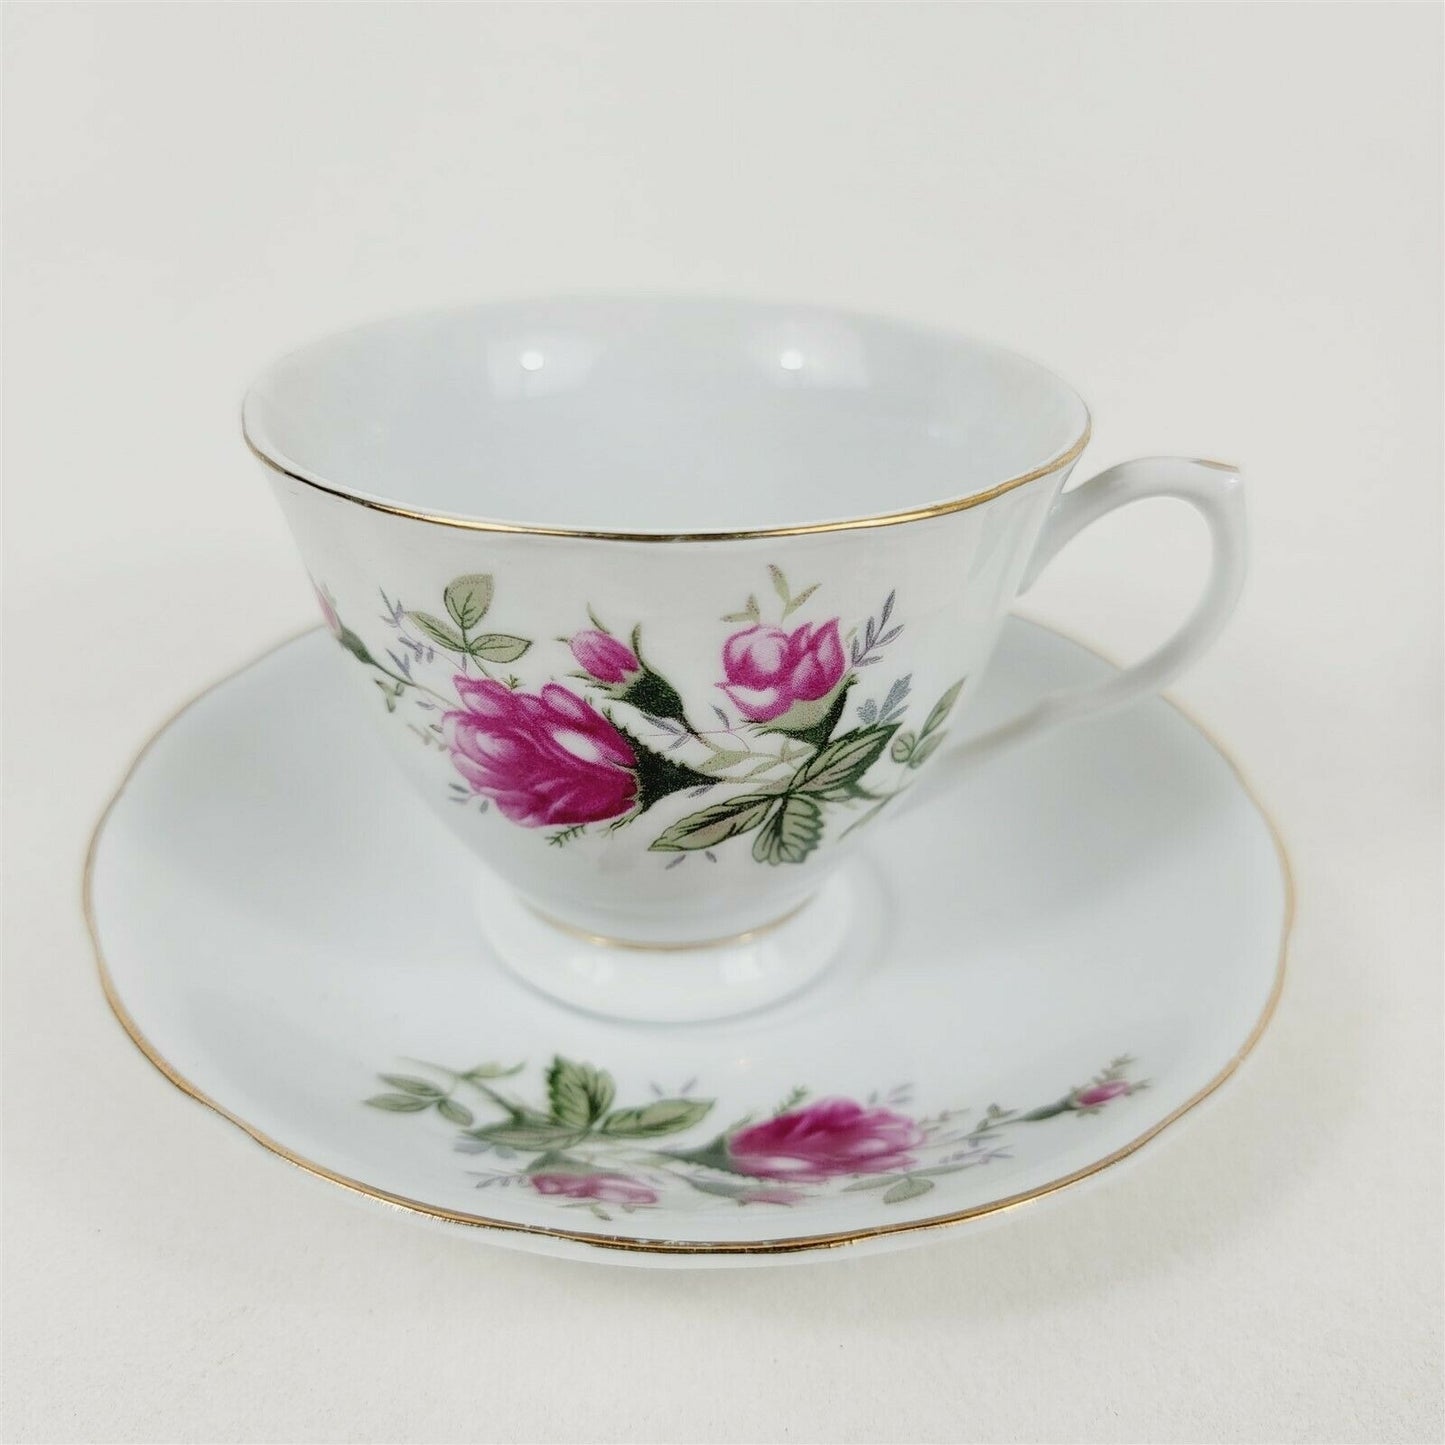 3 Vintage China Tea Cups & Saucers Pink Rose Floral Gold Trim